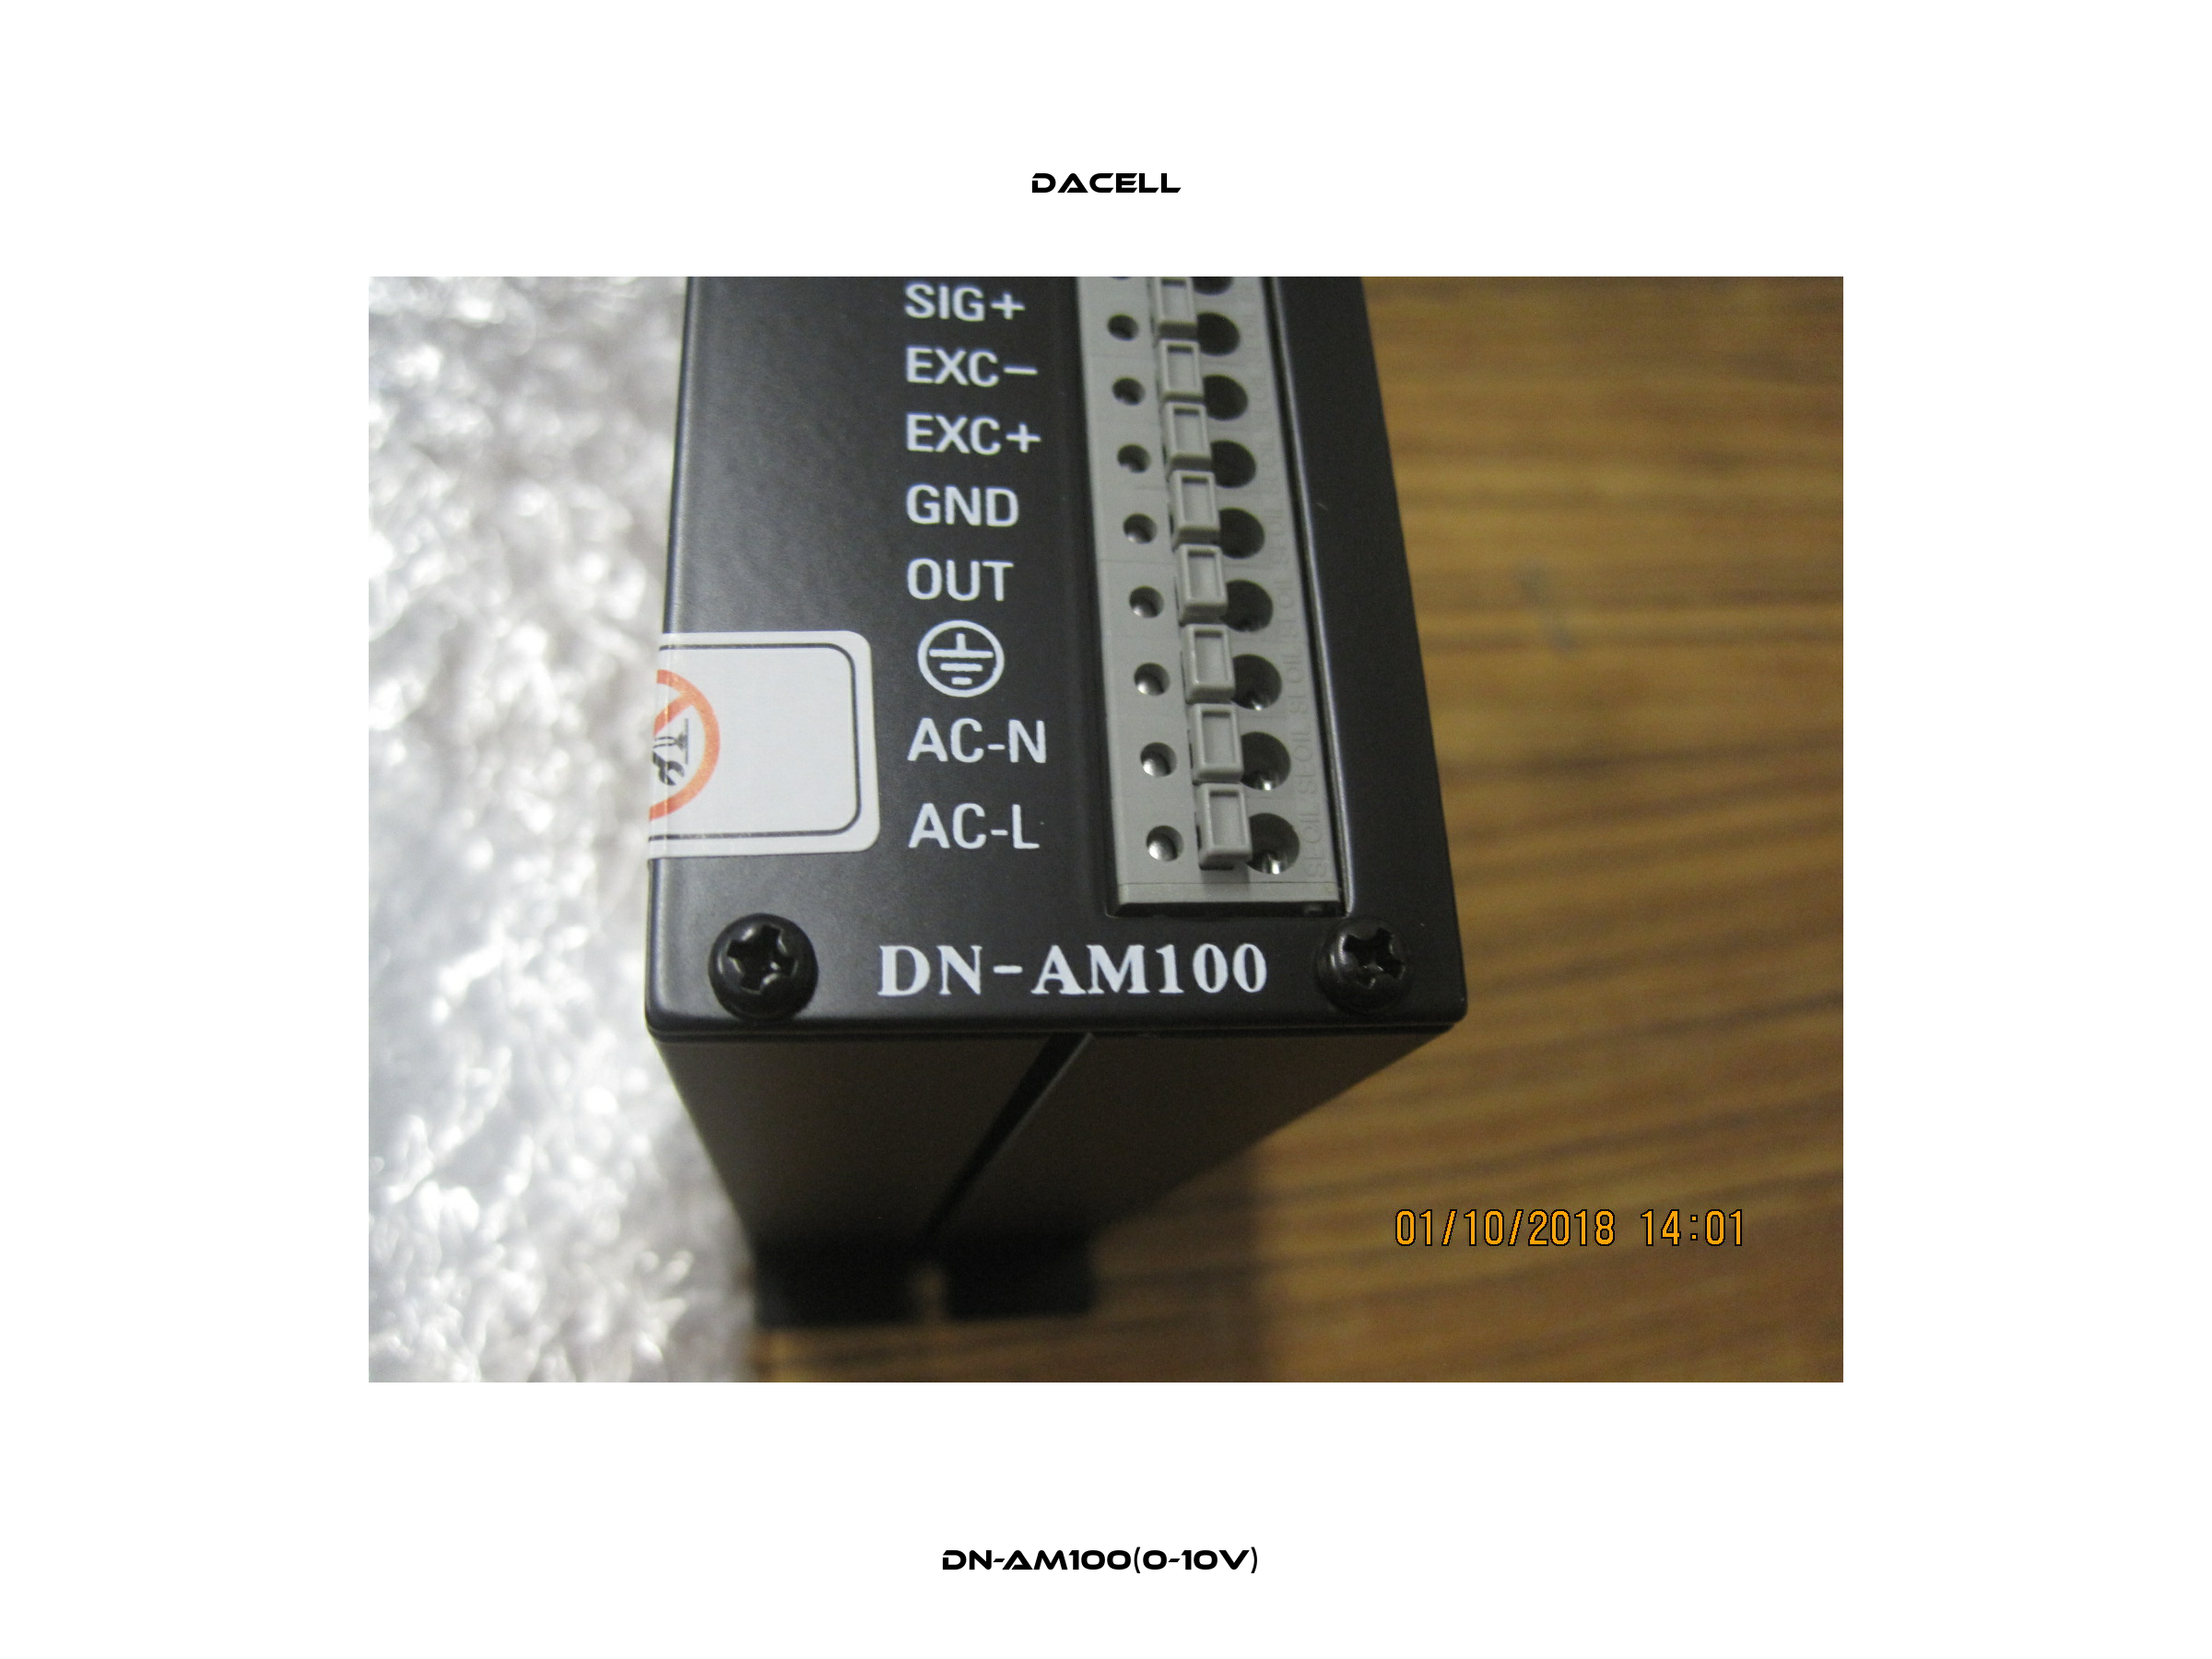 DN-AM100(0-10V)  Dacell